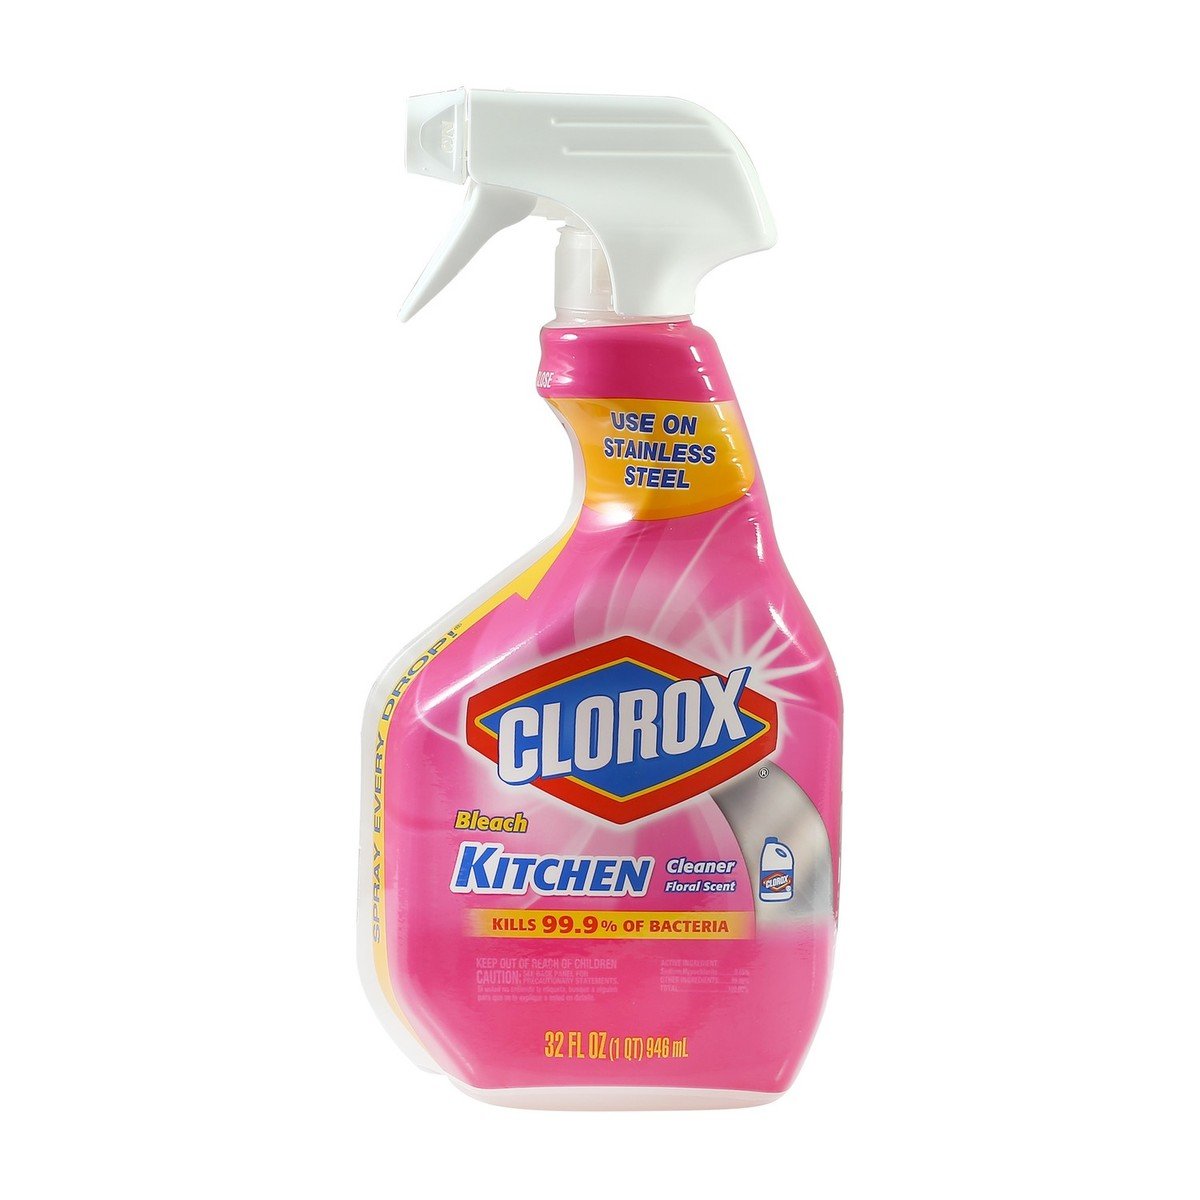 Clorox Bleach Kitchen Cleaner Floral Scent 946ml